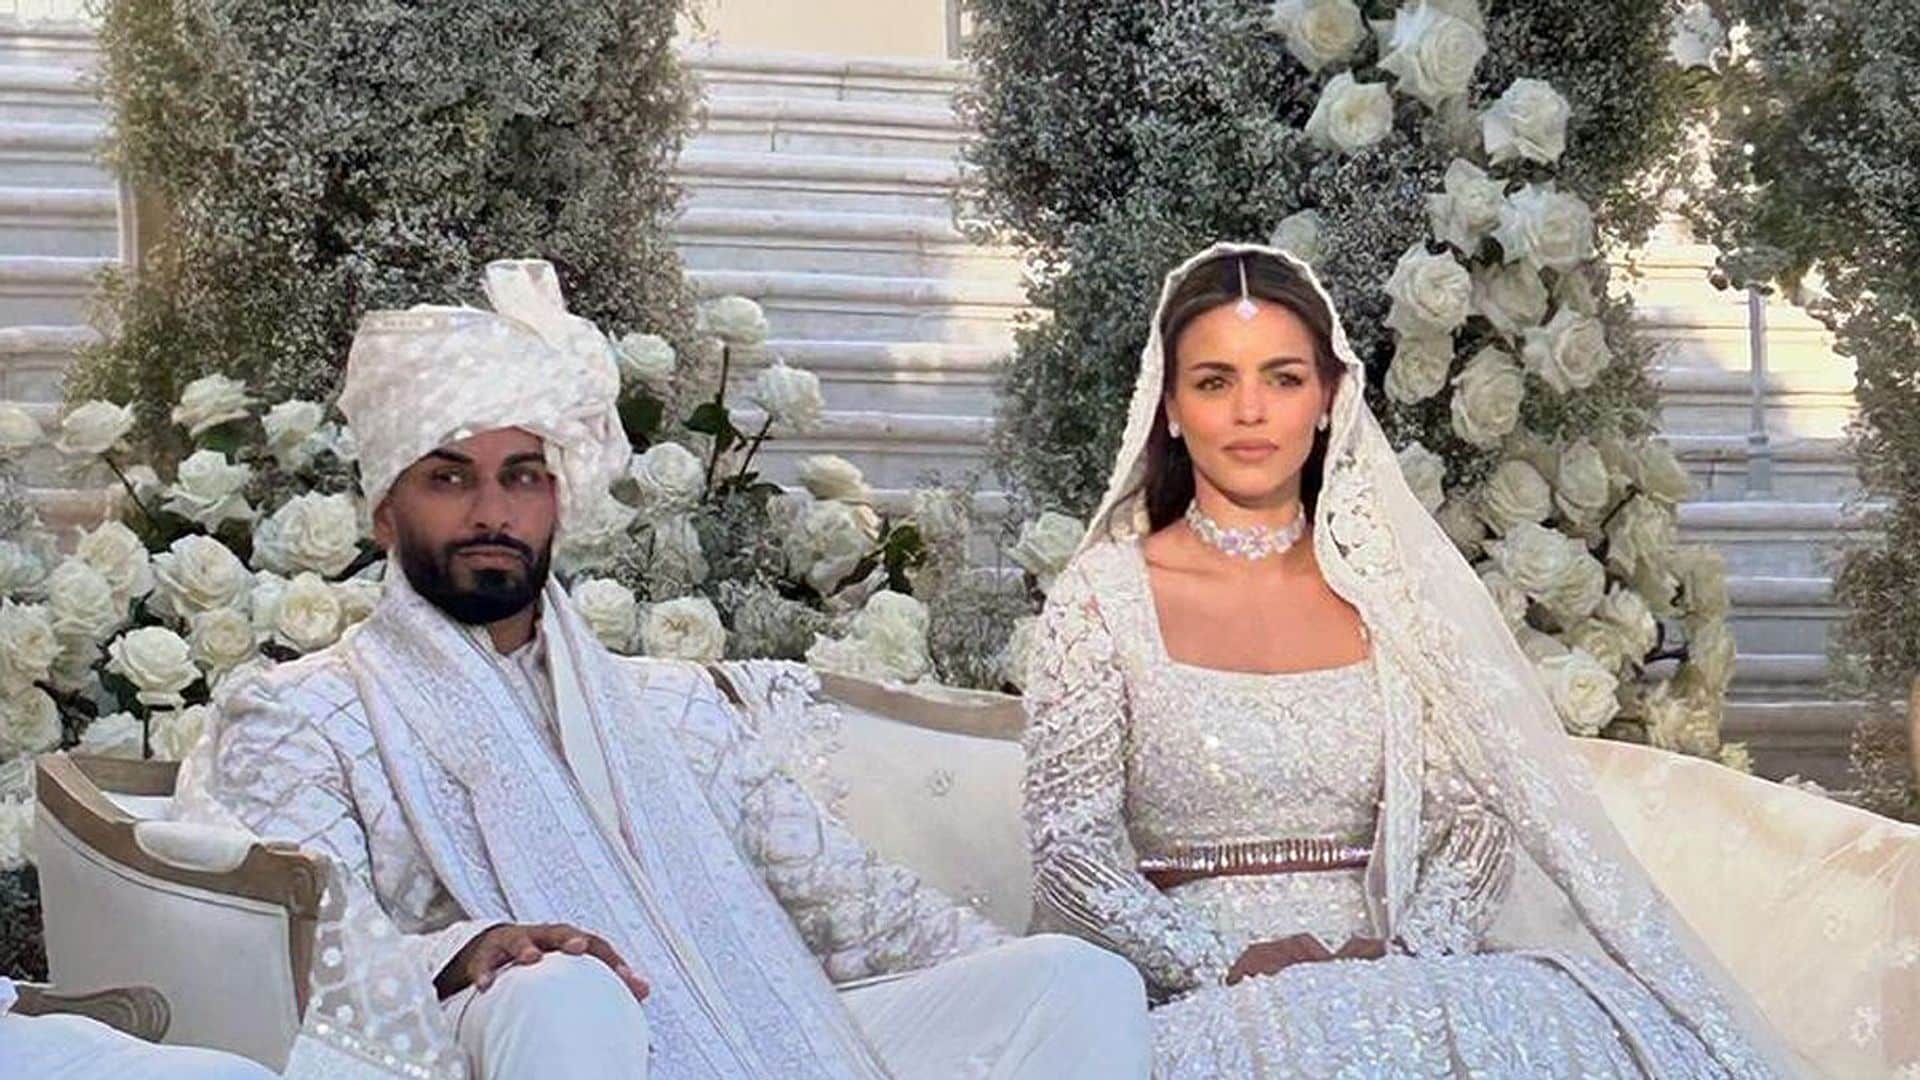 Las imágenes de la espectacular boda del magnate Umar Kamani valorada en 23 millones de euros